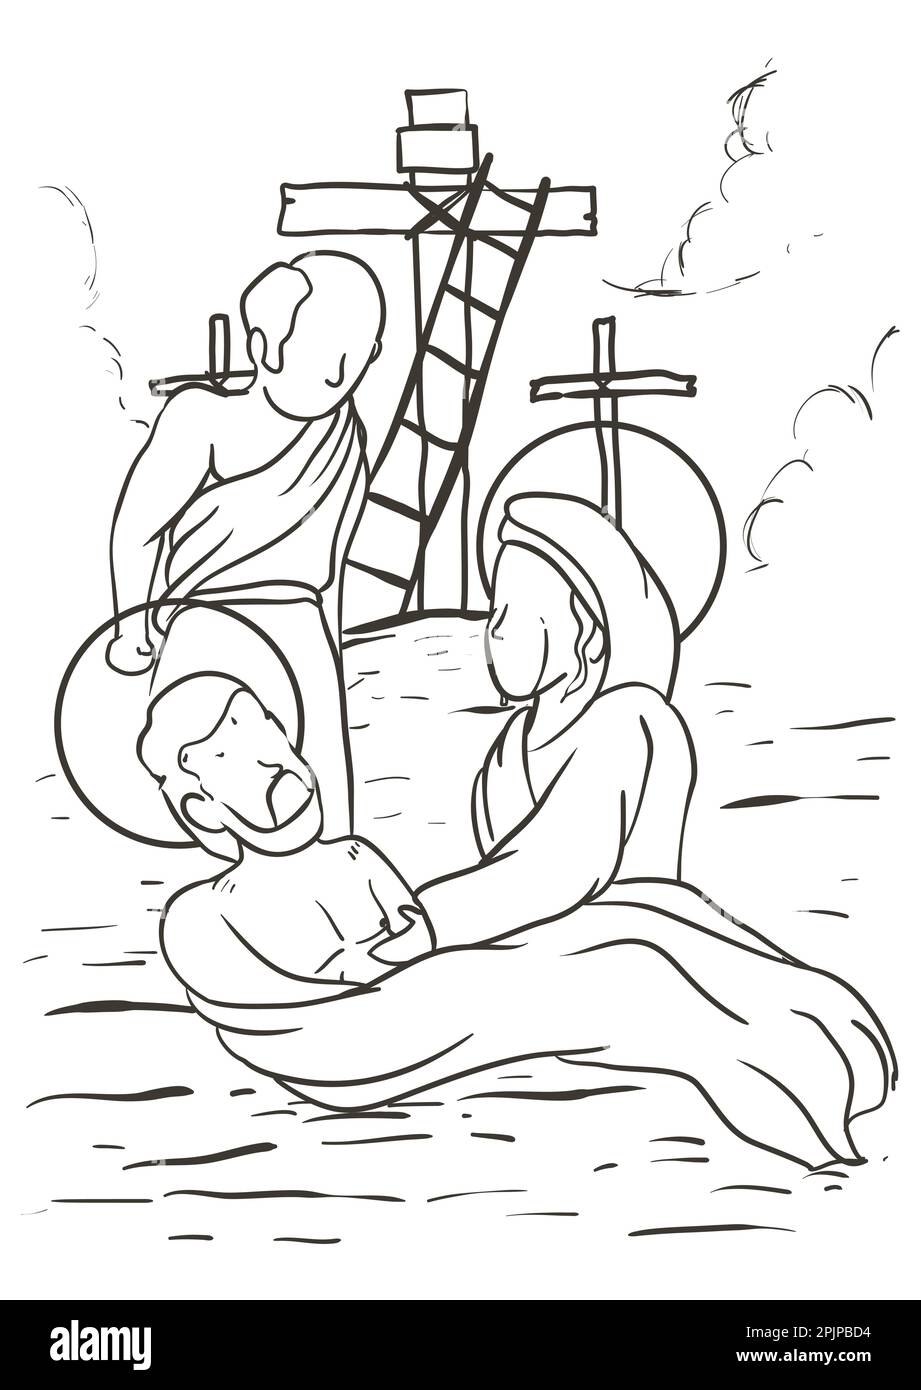 Dibujo del vãa crucis que reprenta la taciãn trece jãºs bajado de la cruz por josã de arimatea y su madre llora por su muerte imagen vector de stock